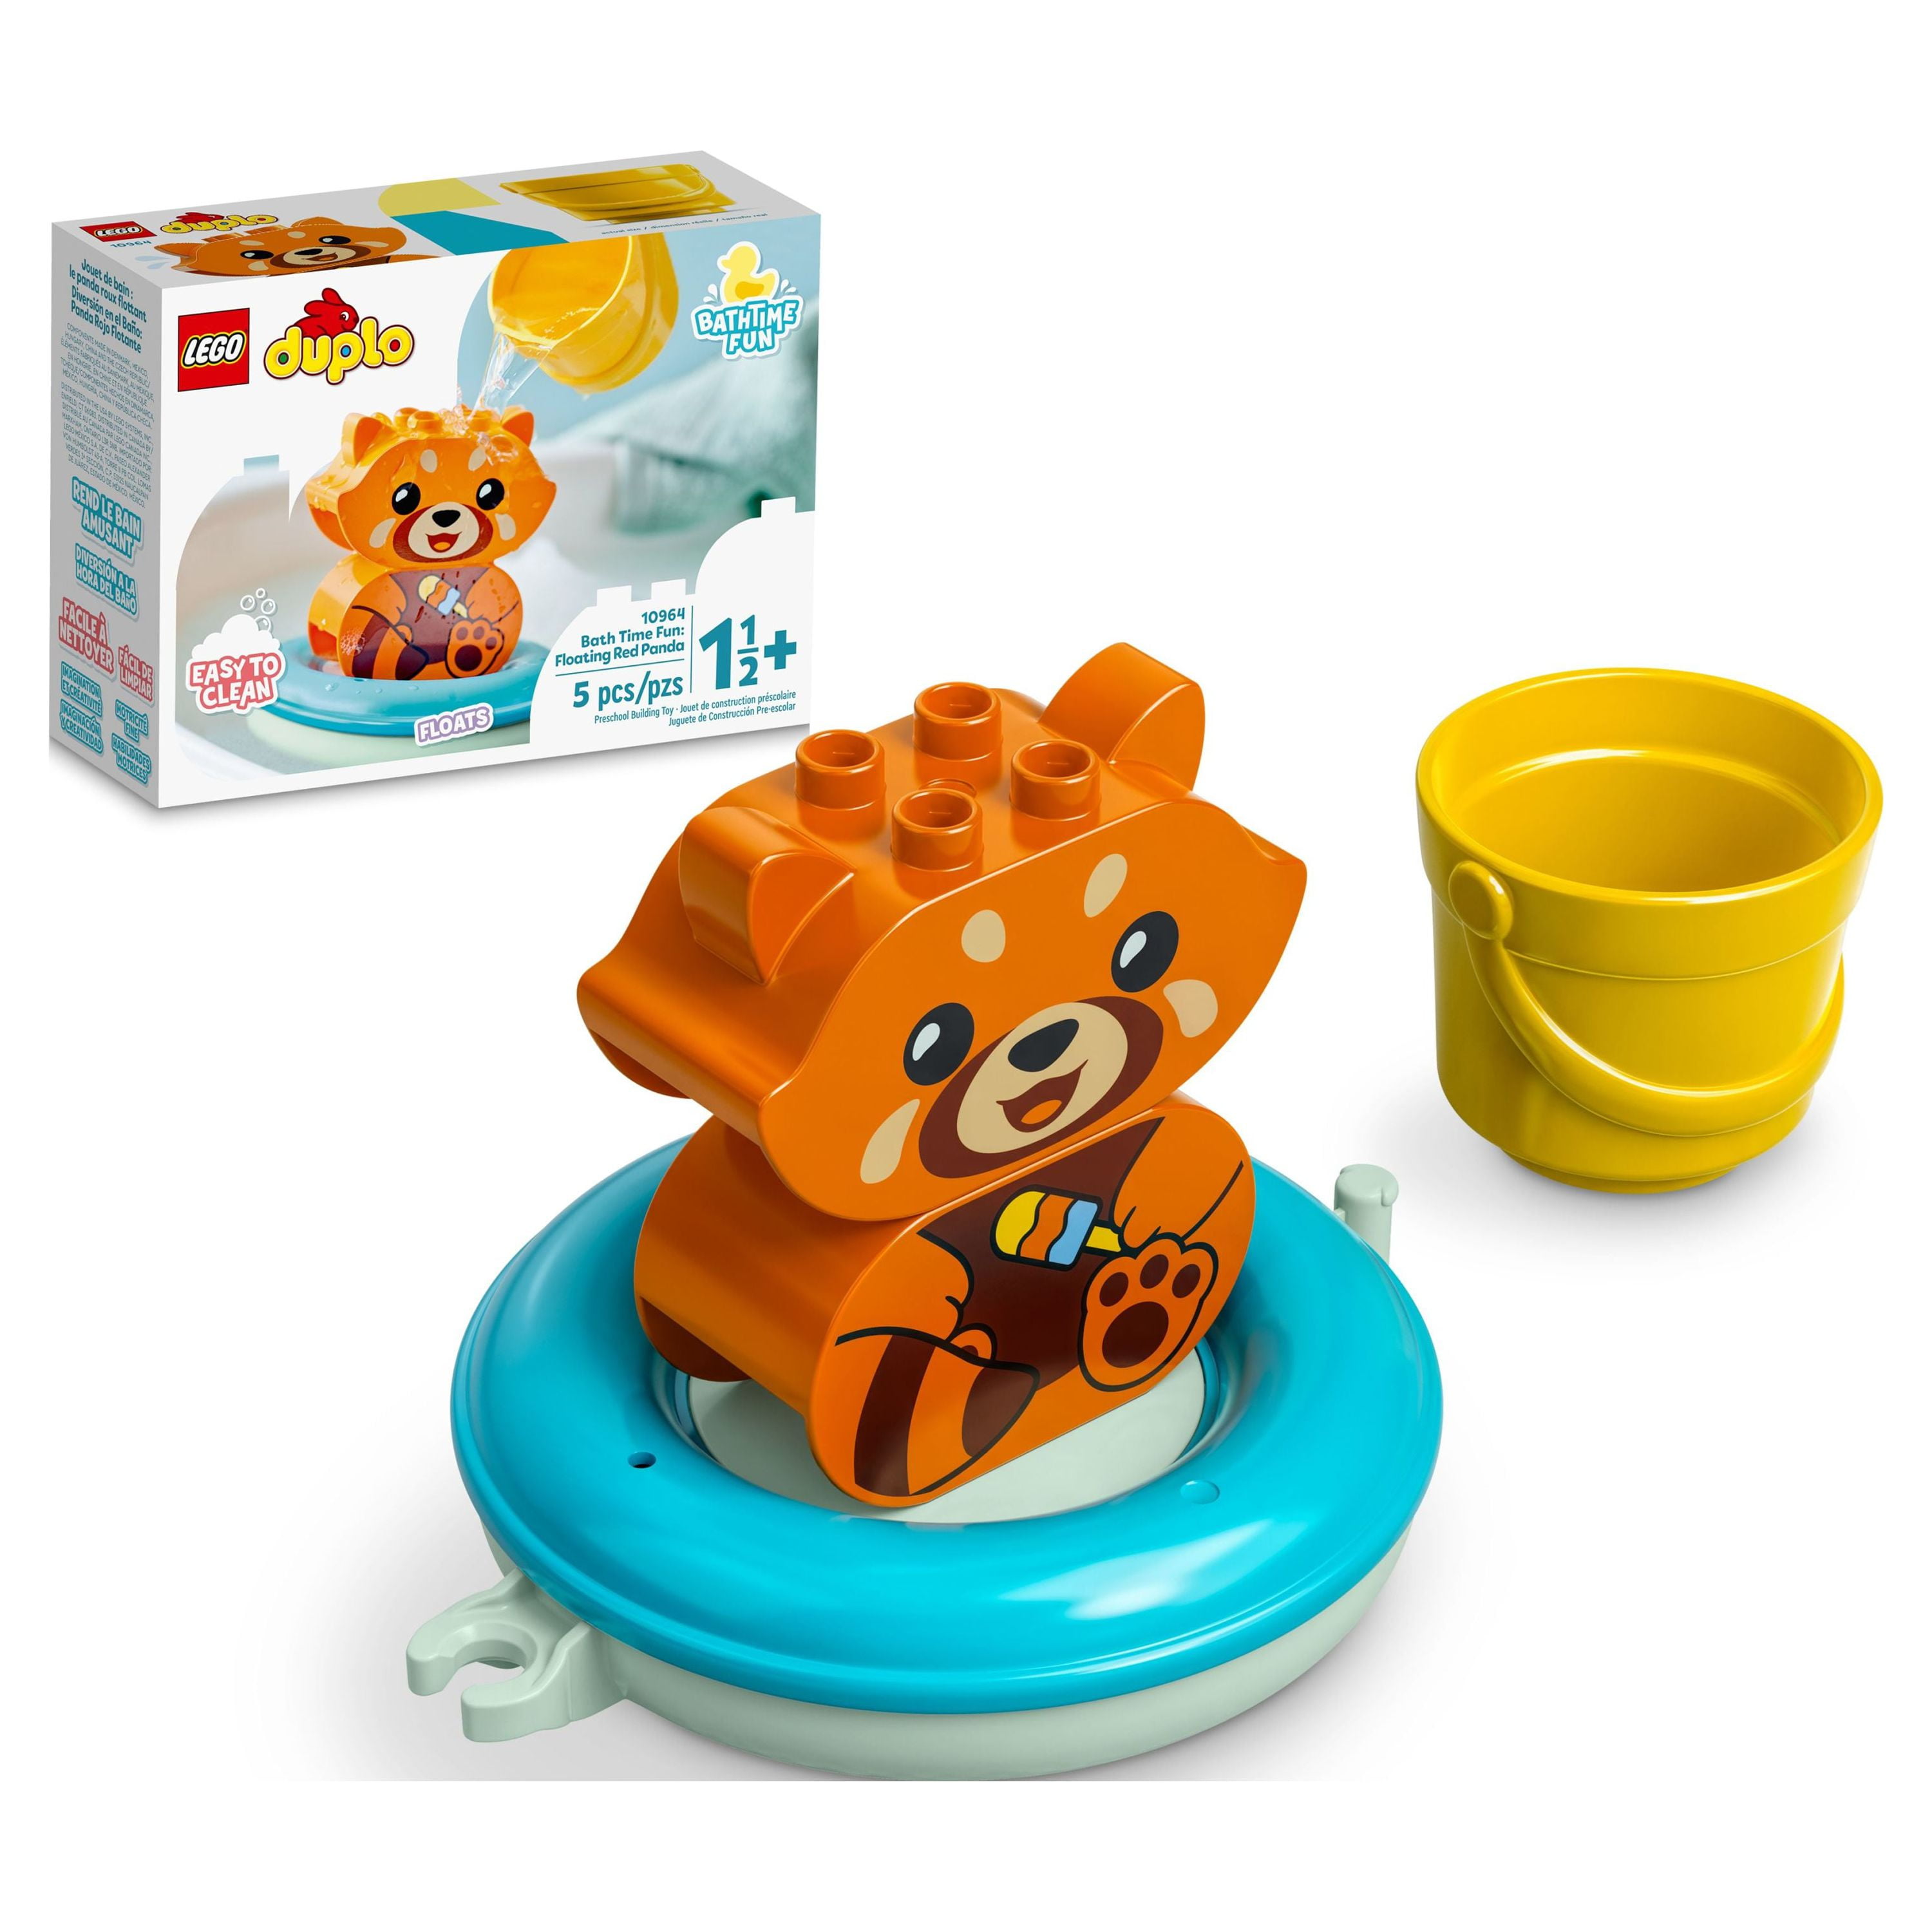 LEGO DUPLO Bath Time Fun: Floating Red Panda 10964 Bath Toy for